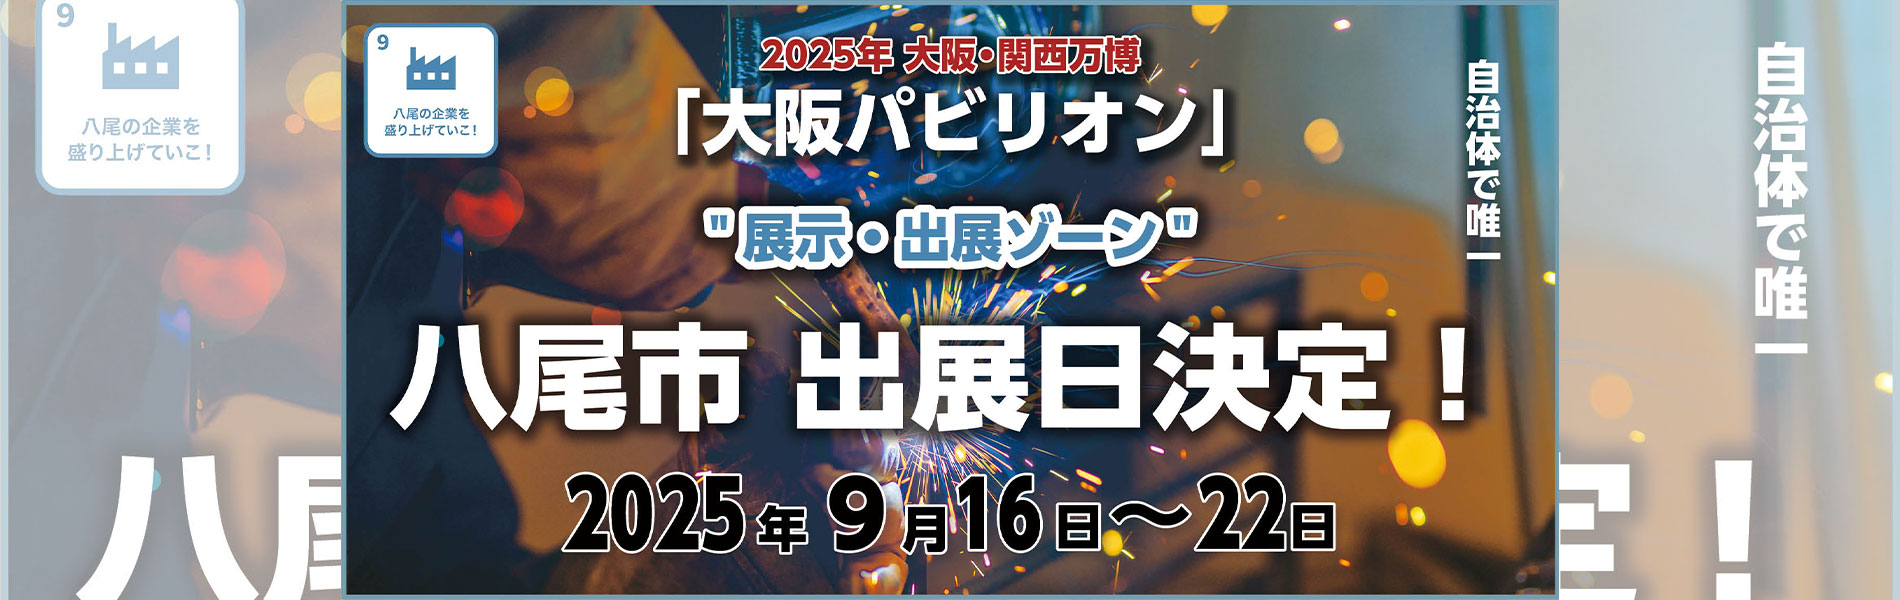 大阪パビリオン 八尾市出展日決定 2025年9月16日〜22日